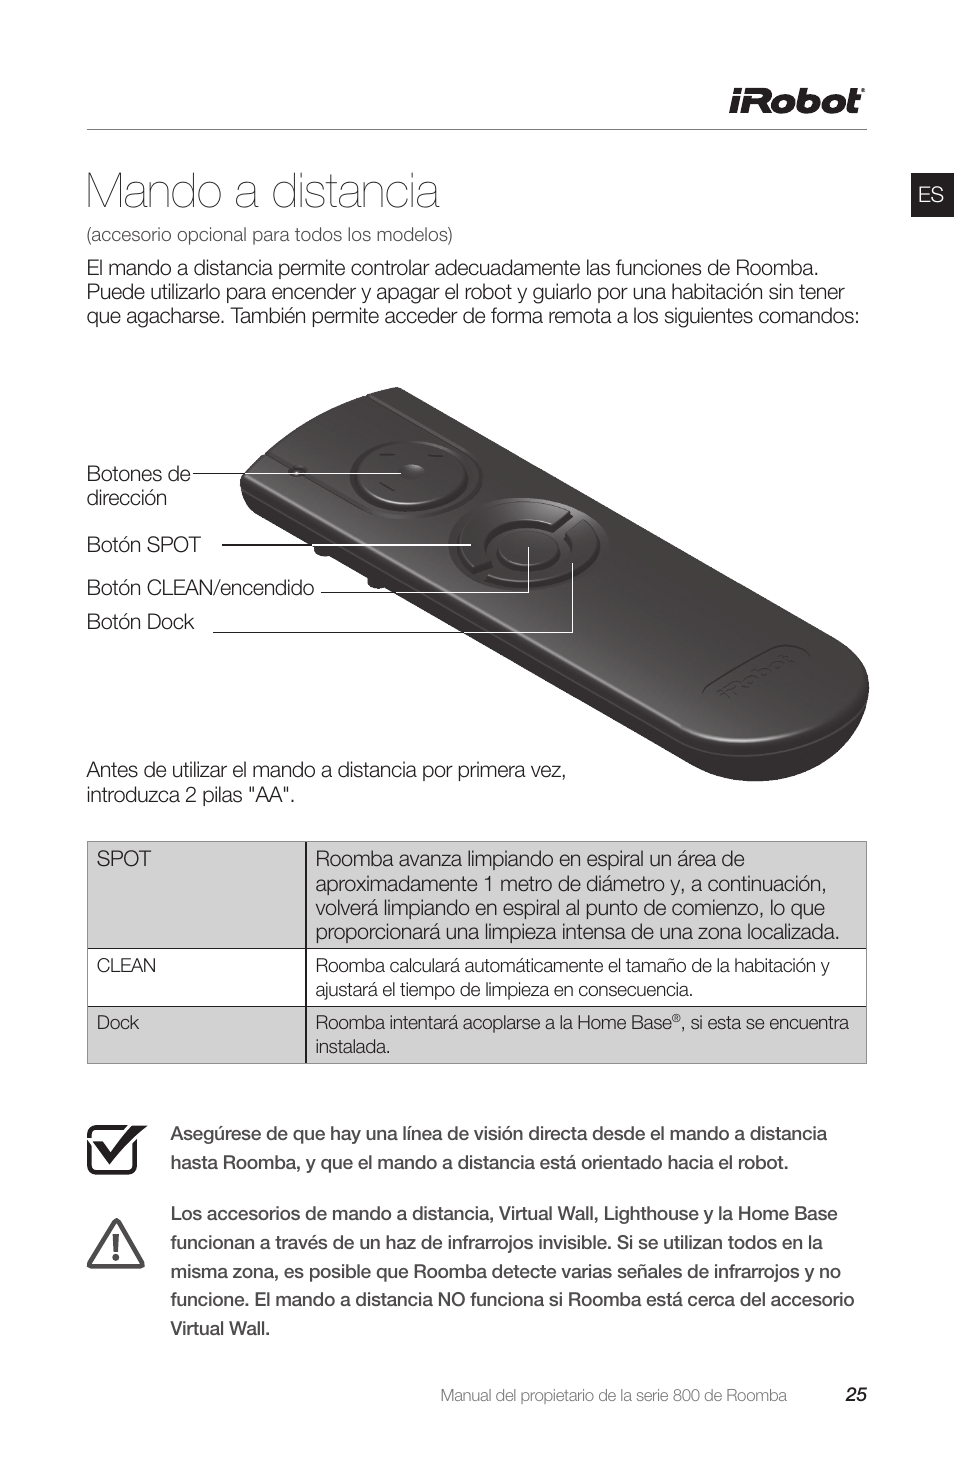 mel Blind tillid handle Mando a distancia | iRobot Roomba 800 Series Manual del usuario | Página 25  / 40 | Original